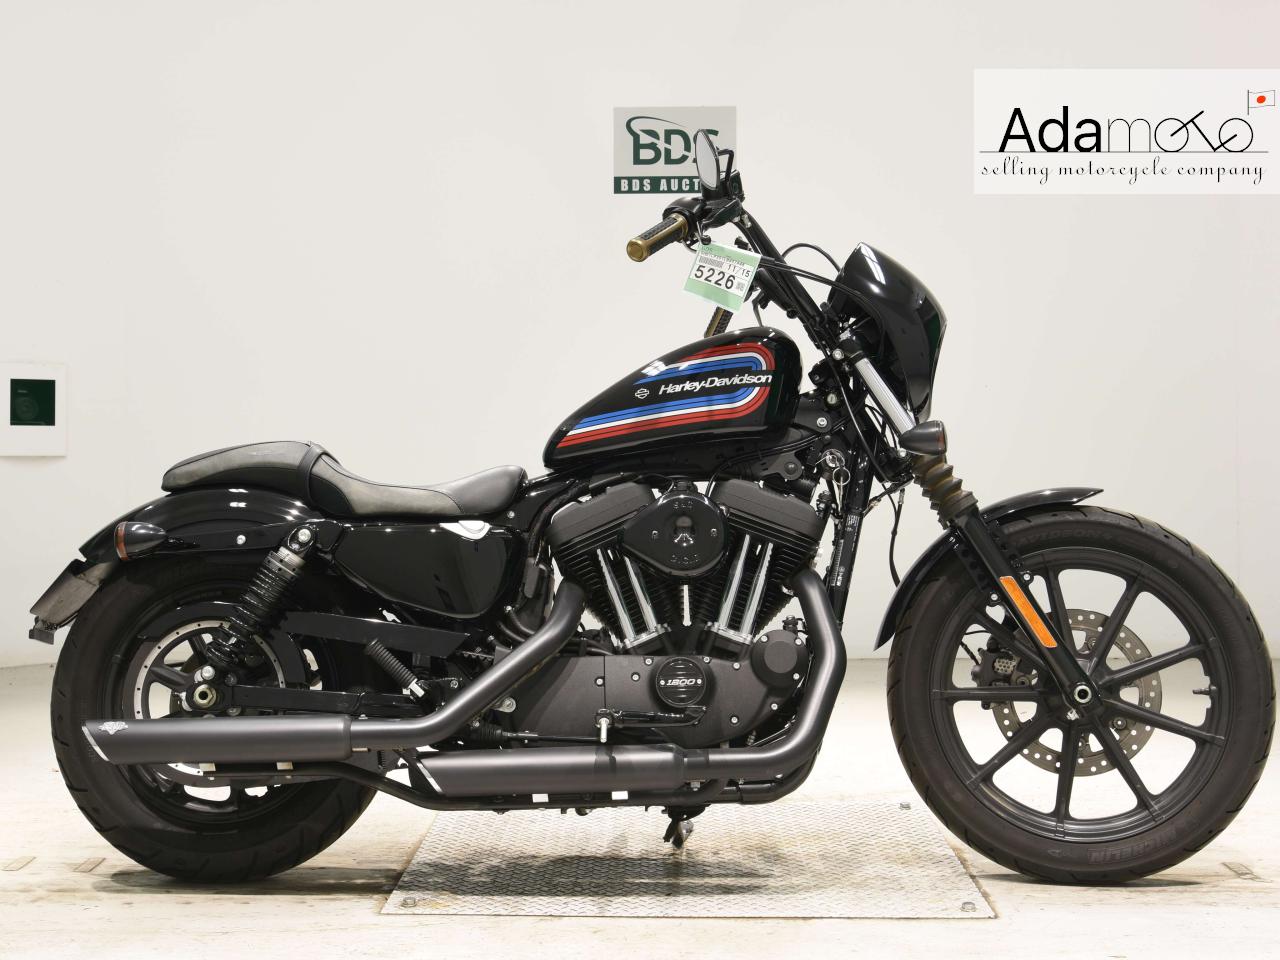 Harley Davidson XL1200NS - Adamoto - Motorcycles from Japan